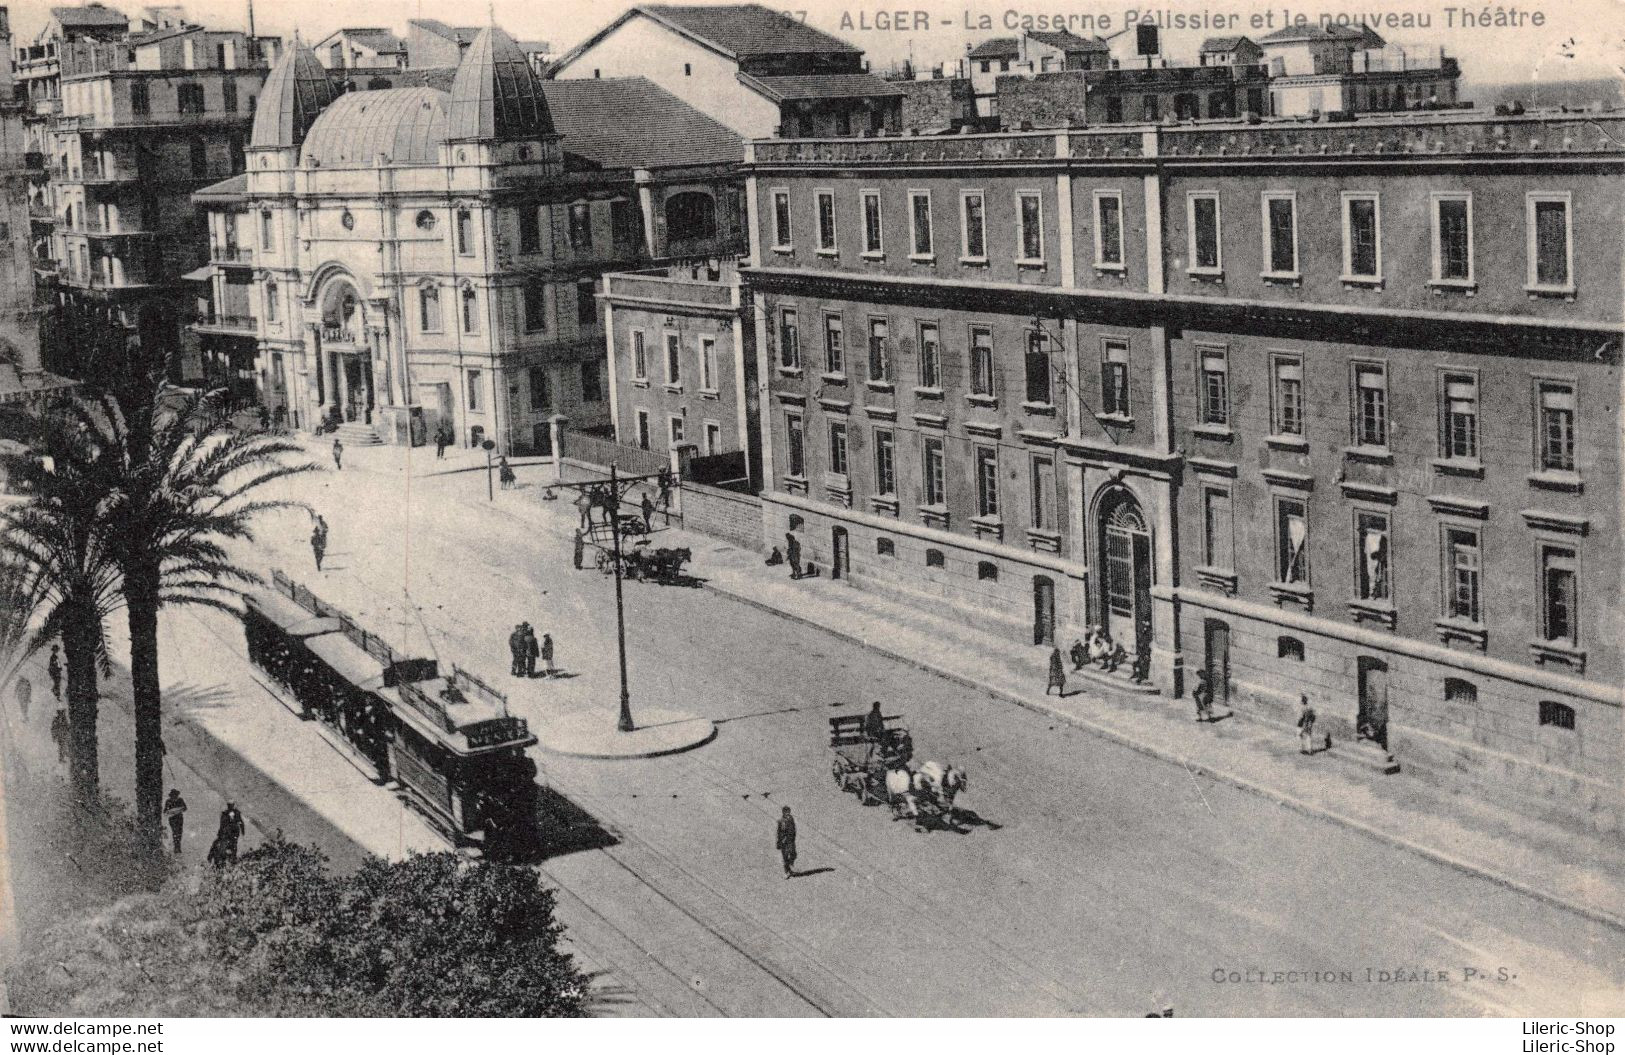 ALGER  La Caserne Pélissier Et Le Nouveau Théâtre -  N°367 Collection Idéale - Tramway  Cpa  1933 ♥♥♥ - Alger